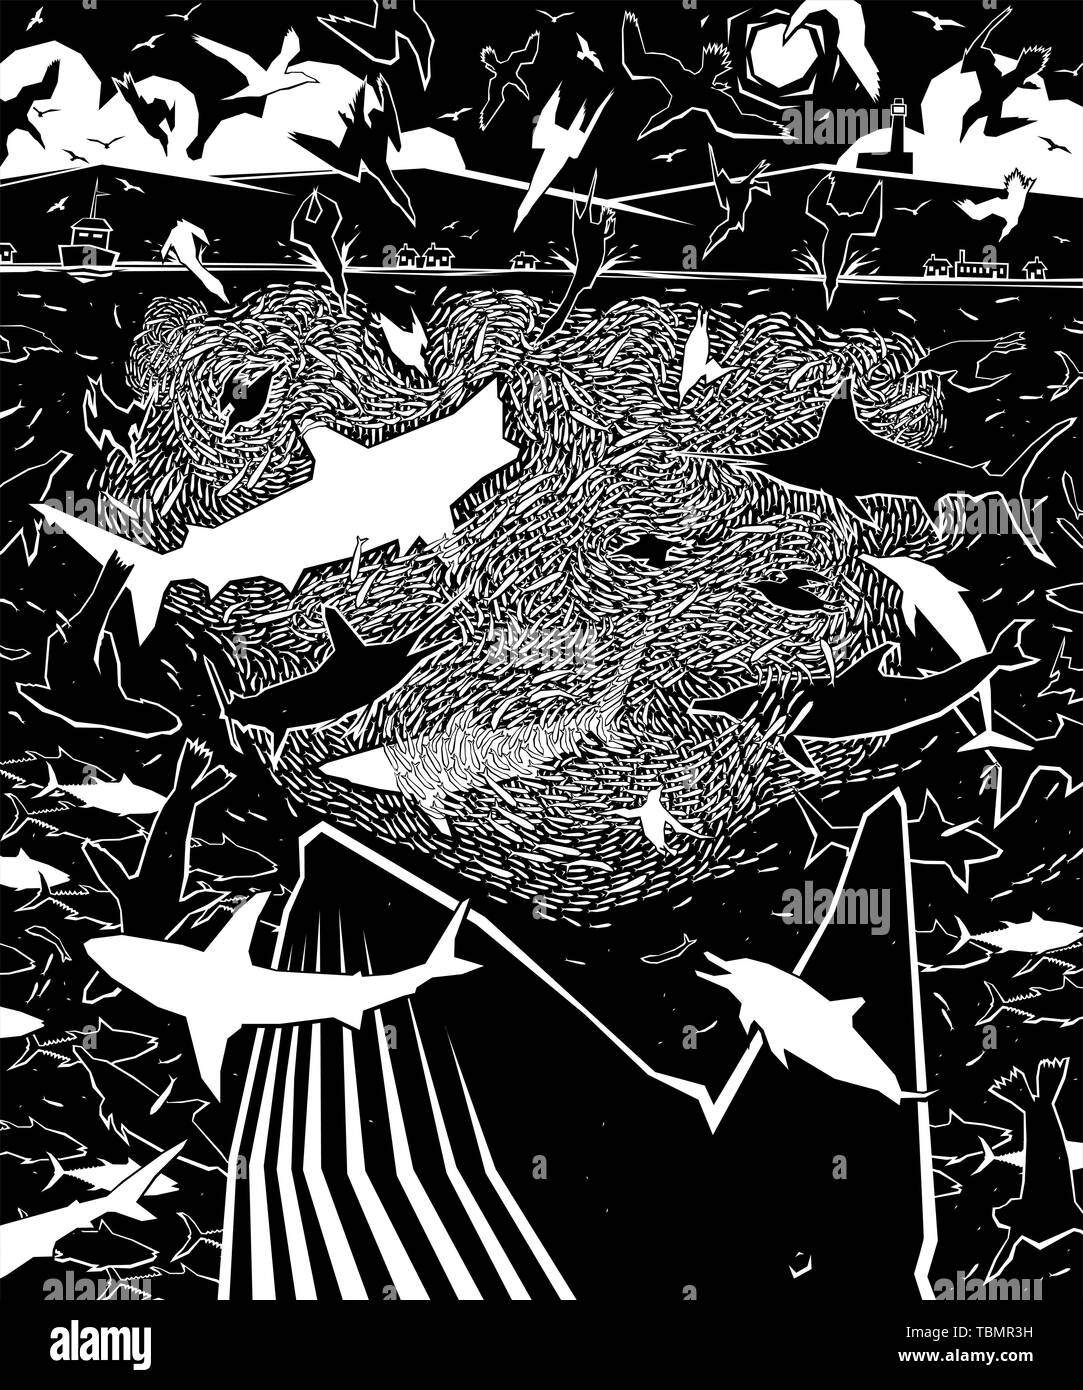 Editable Vector Illustration der unterschiedlichen Raubtiere Angriff auf einen Fisch im Meer baitball Stock Vektor